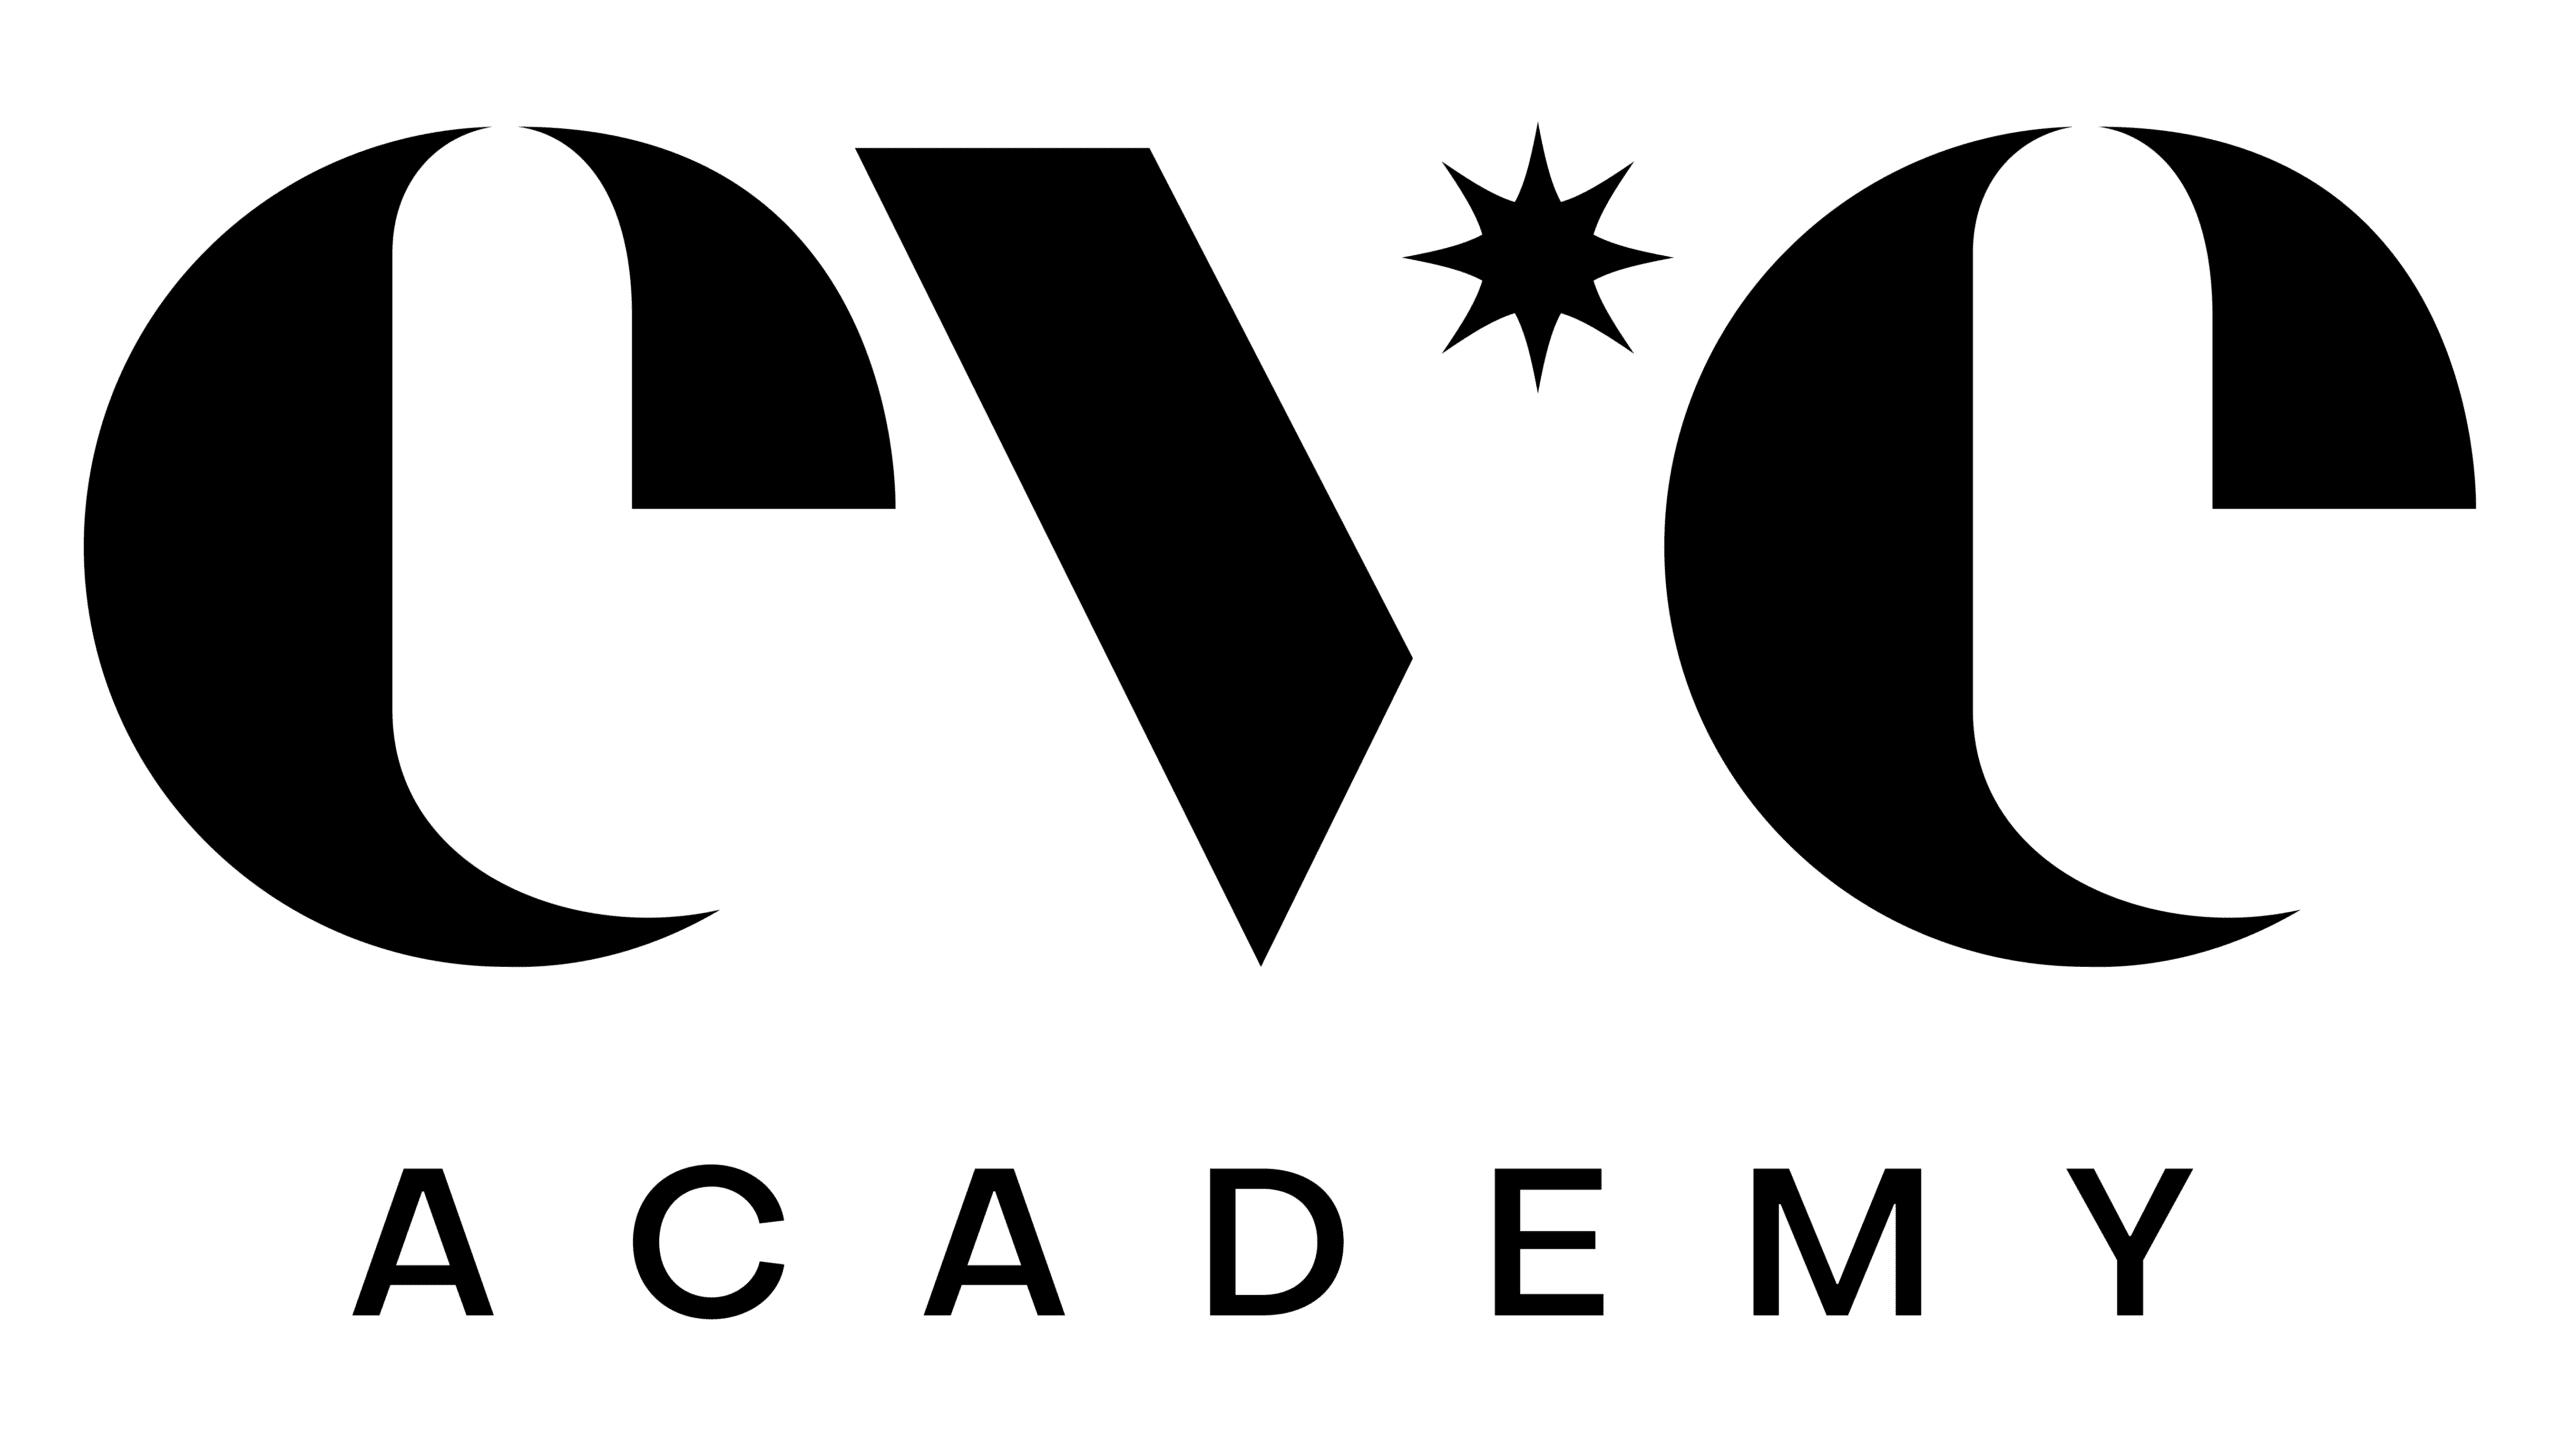 Eve Academy